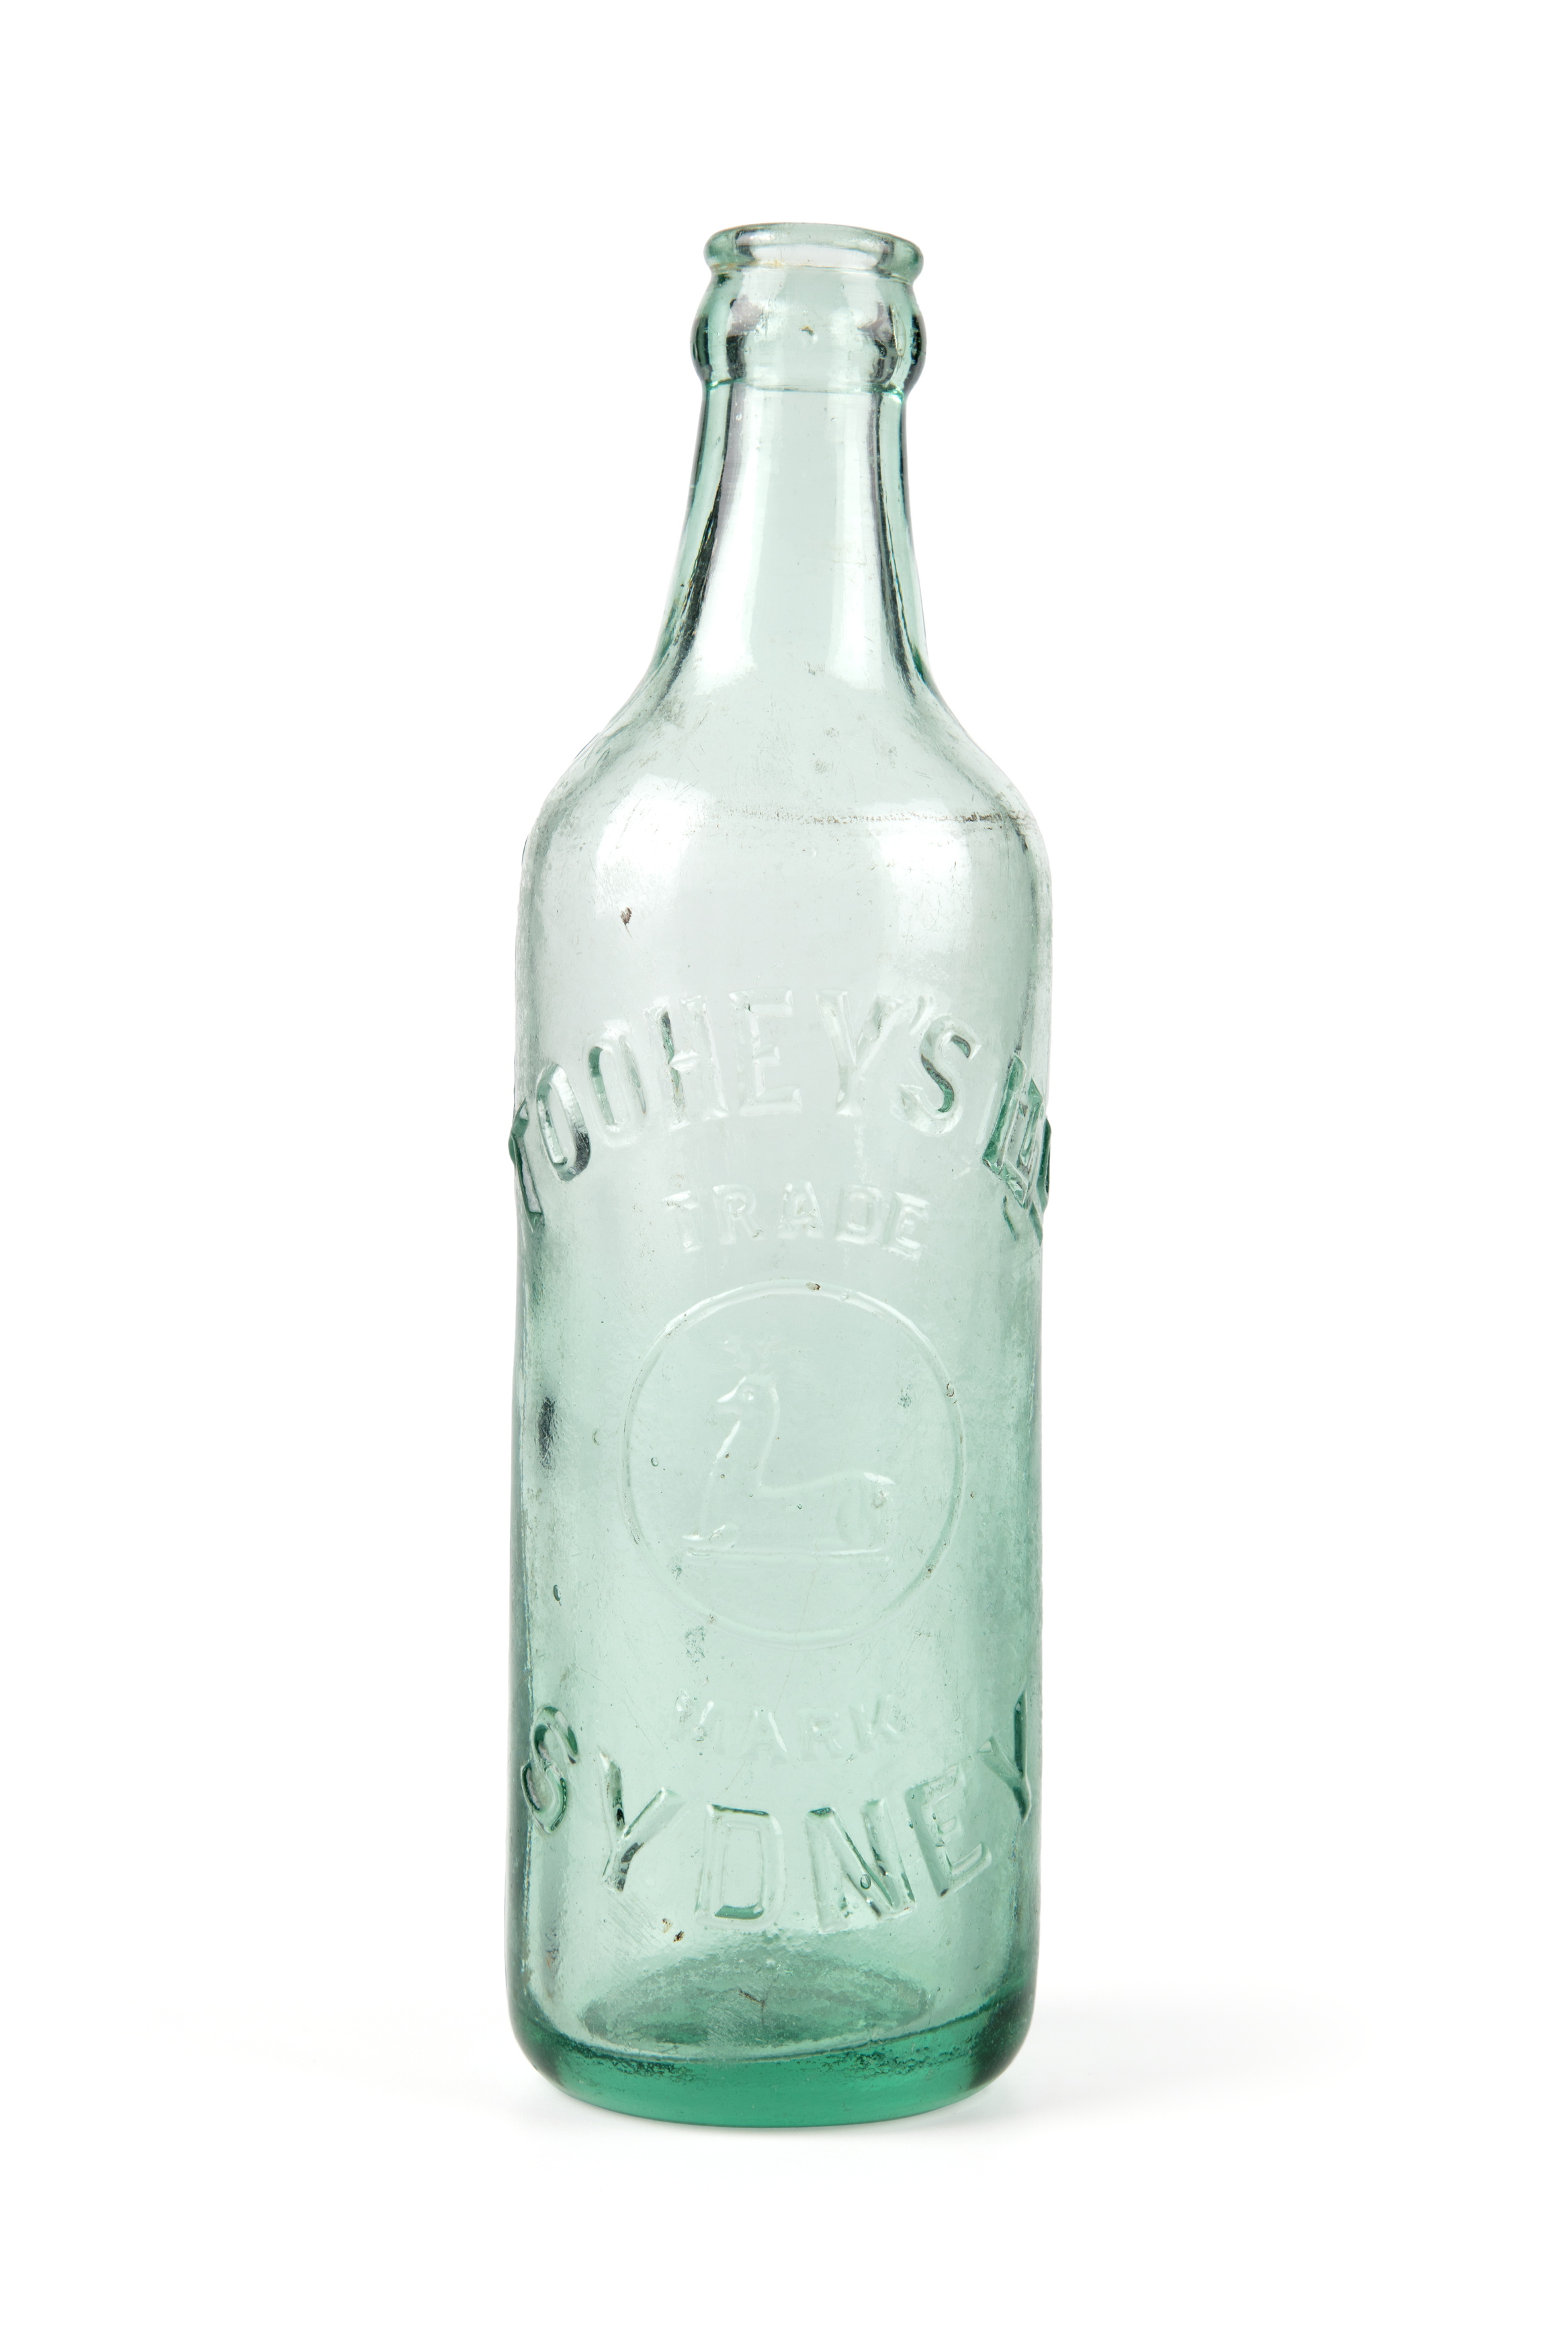 Tooheys green glass bottle